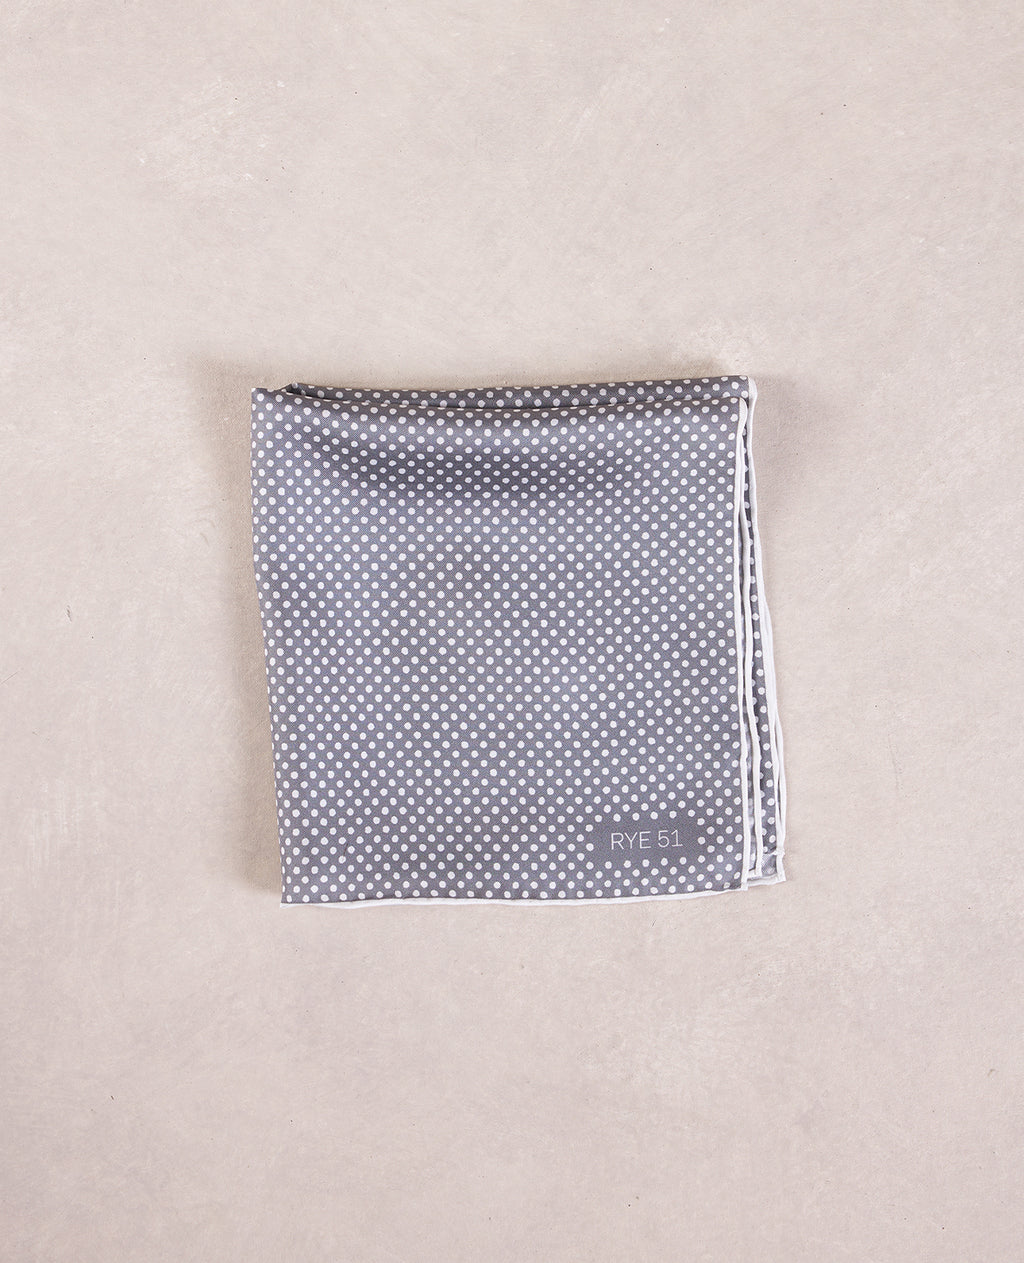 The Silk Pocket Square - 100% Silk Pocket Square - Grey w/ White Polka Dot